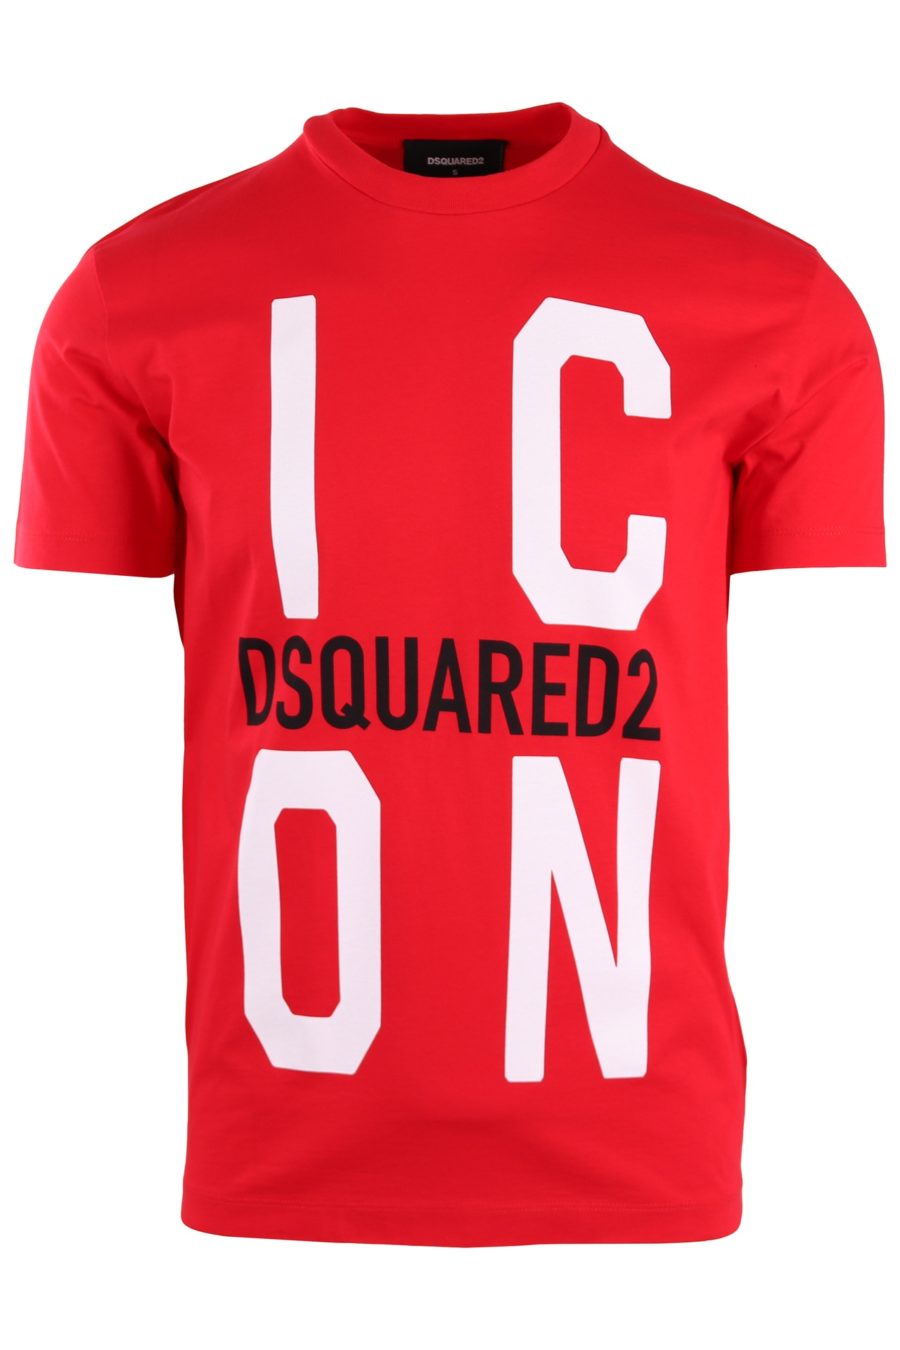 Camiseta Dsquared2 roja con logo grande "Icon" - 5dddf9b0d1c8d398084894c2cf09534a9f72151d